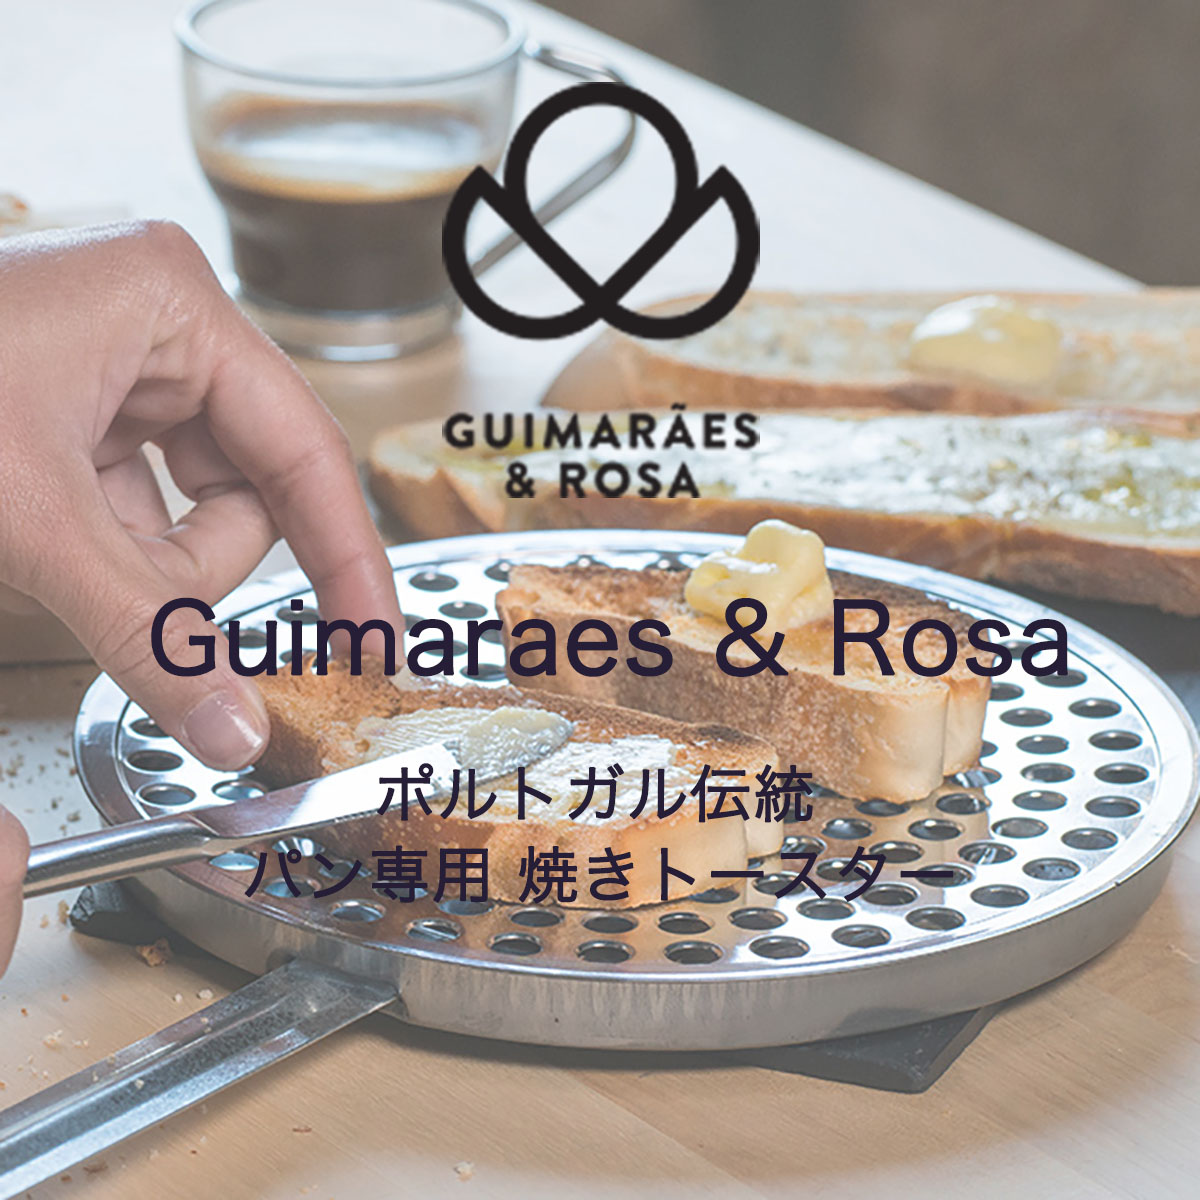 パン焼きトースター Toaster ギマランイスイホーザ Guimaraes & Rosa